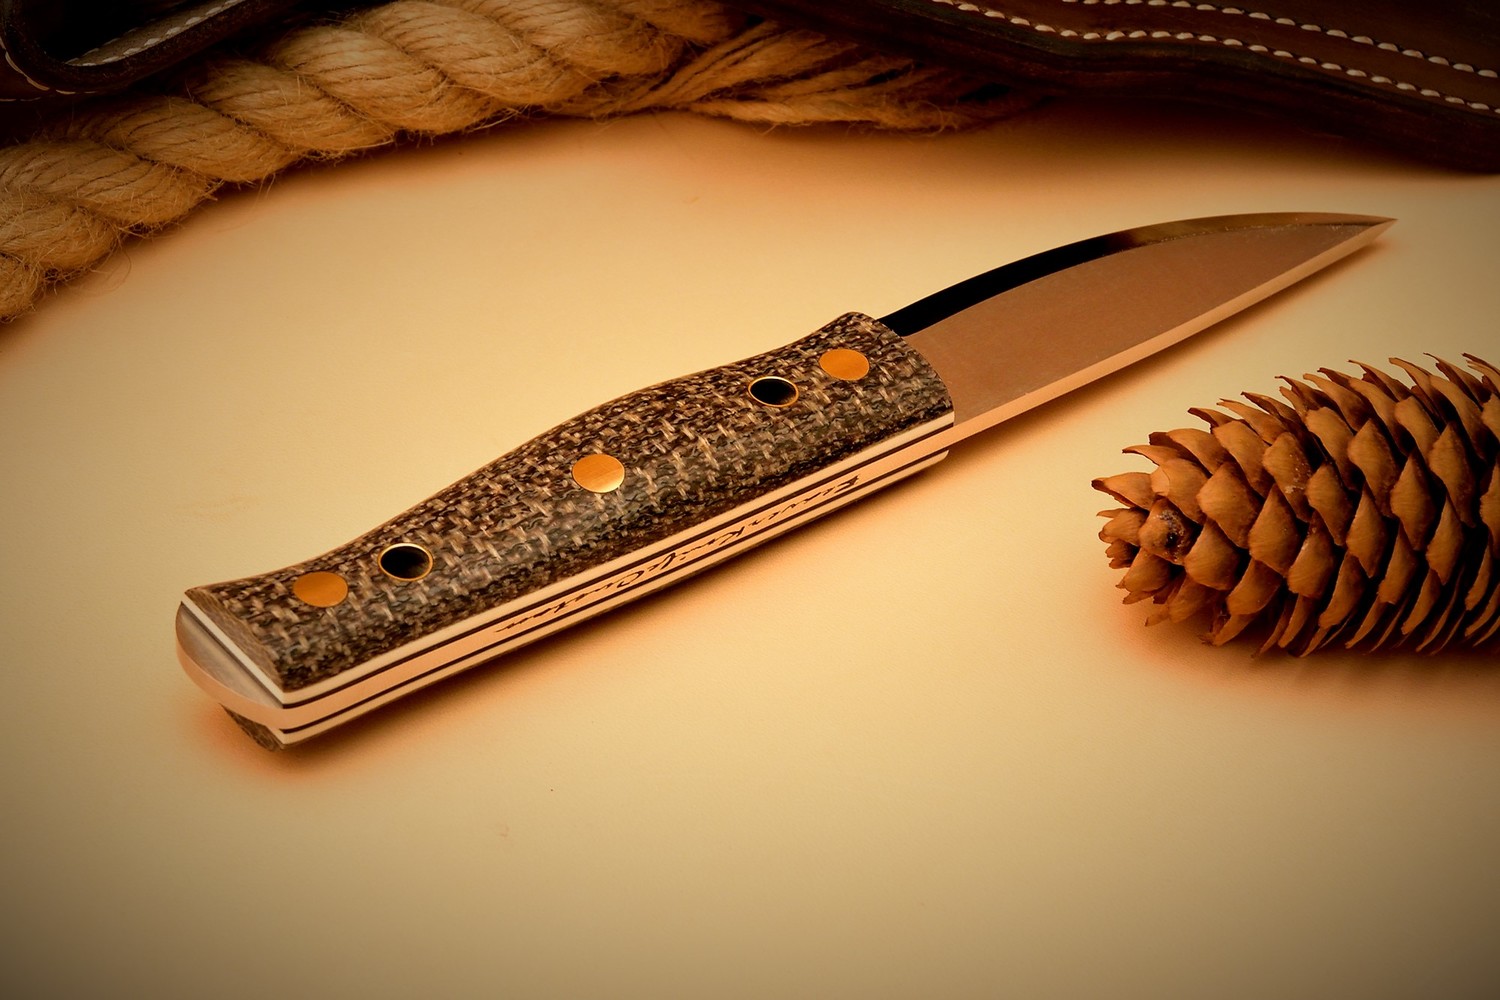 Бушкрафт нож bushсraft knife BeaverKnife